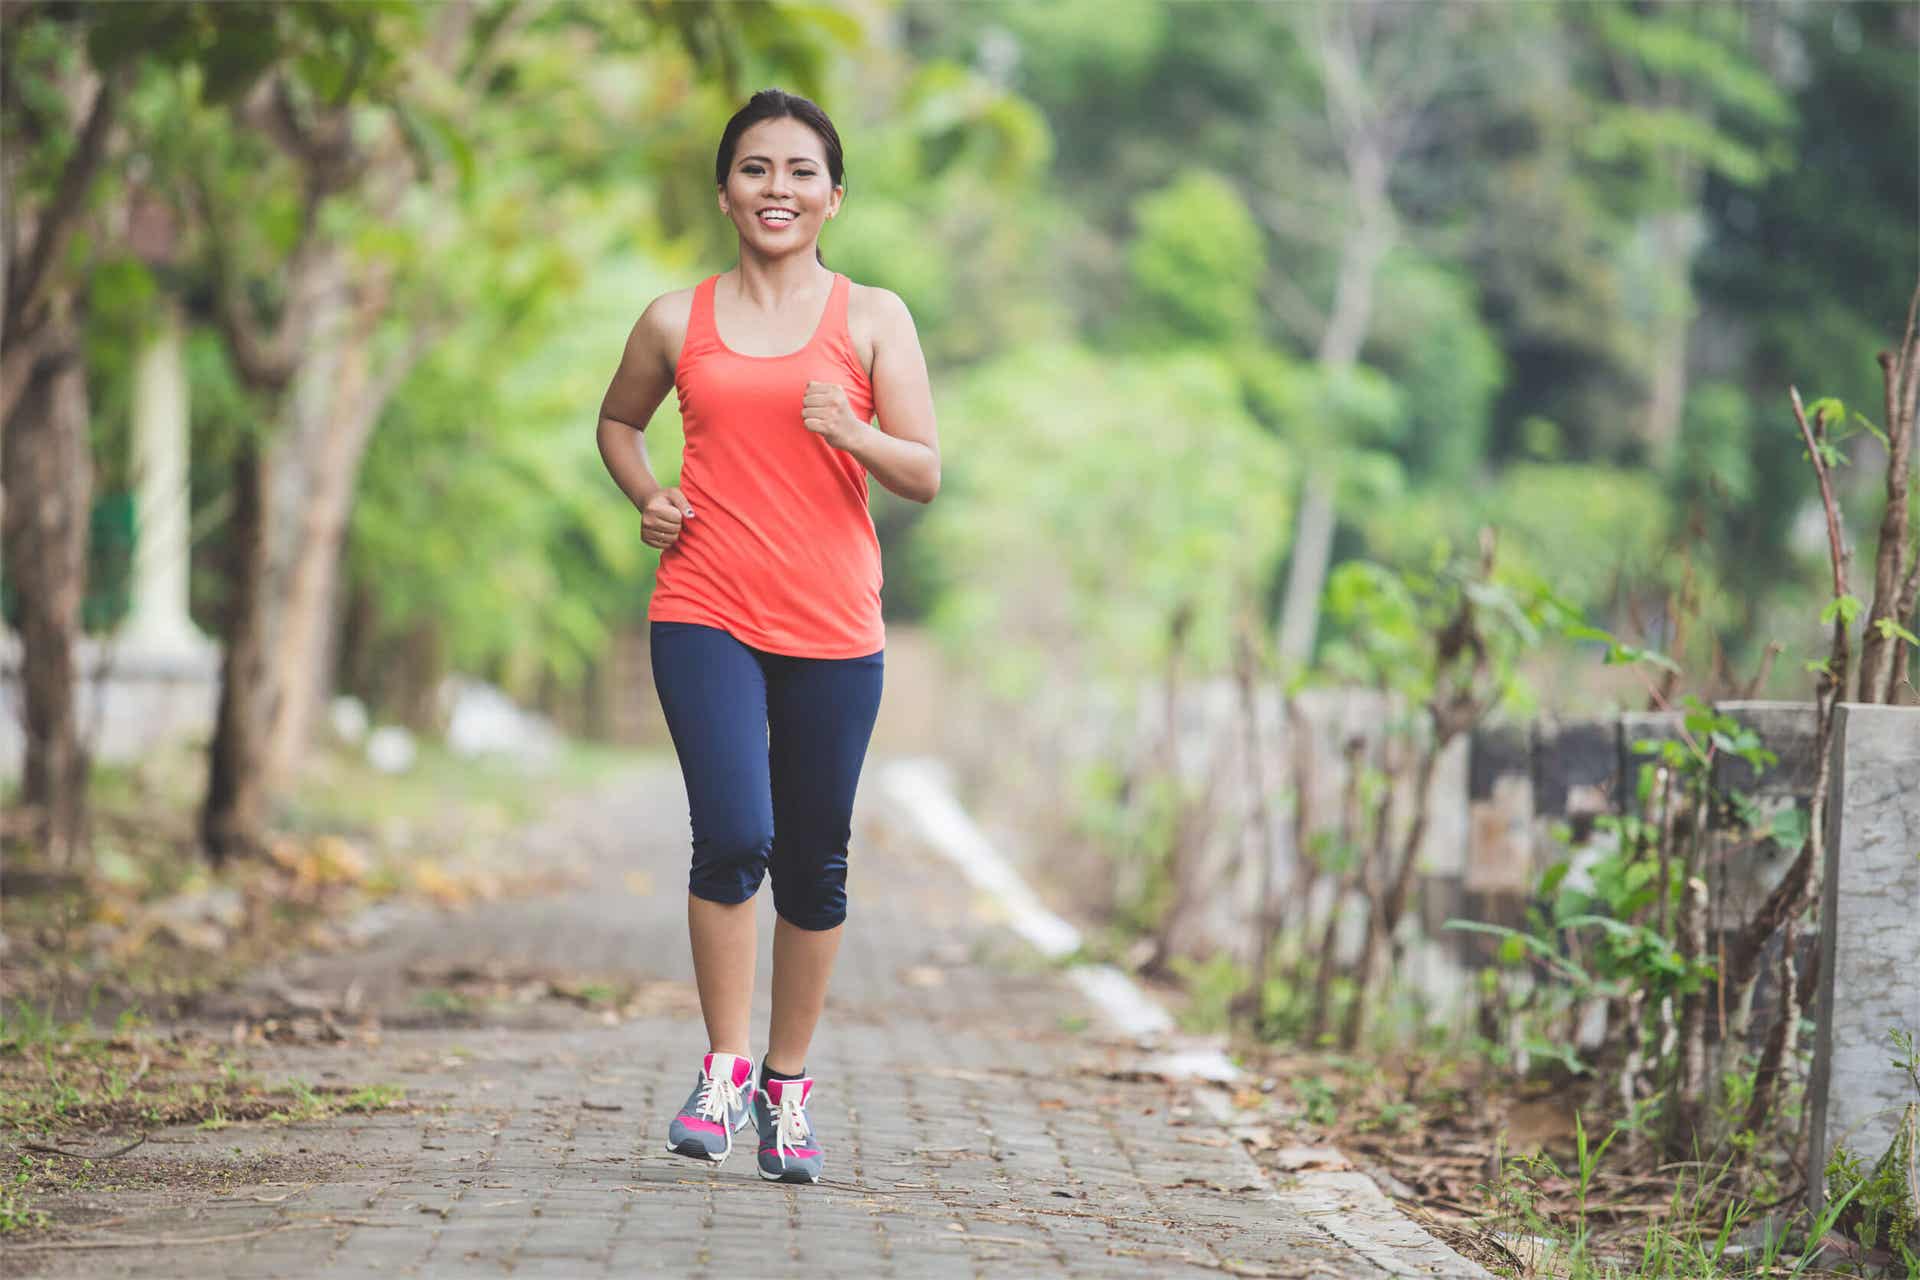 El ejercicio se puede evitar durante el periodo menstrual